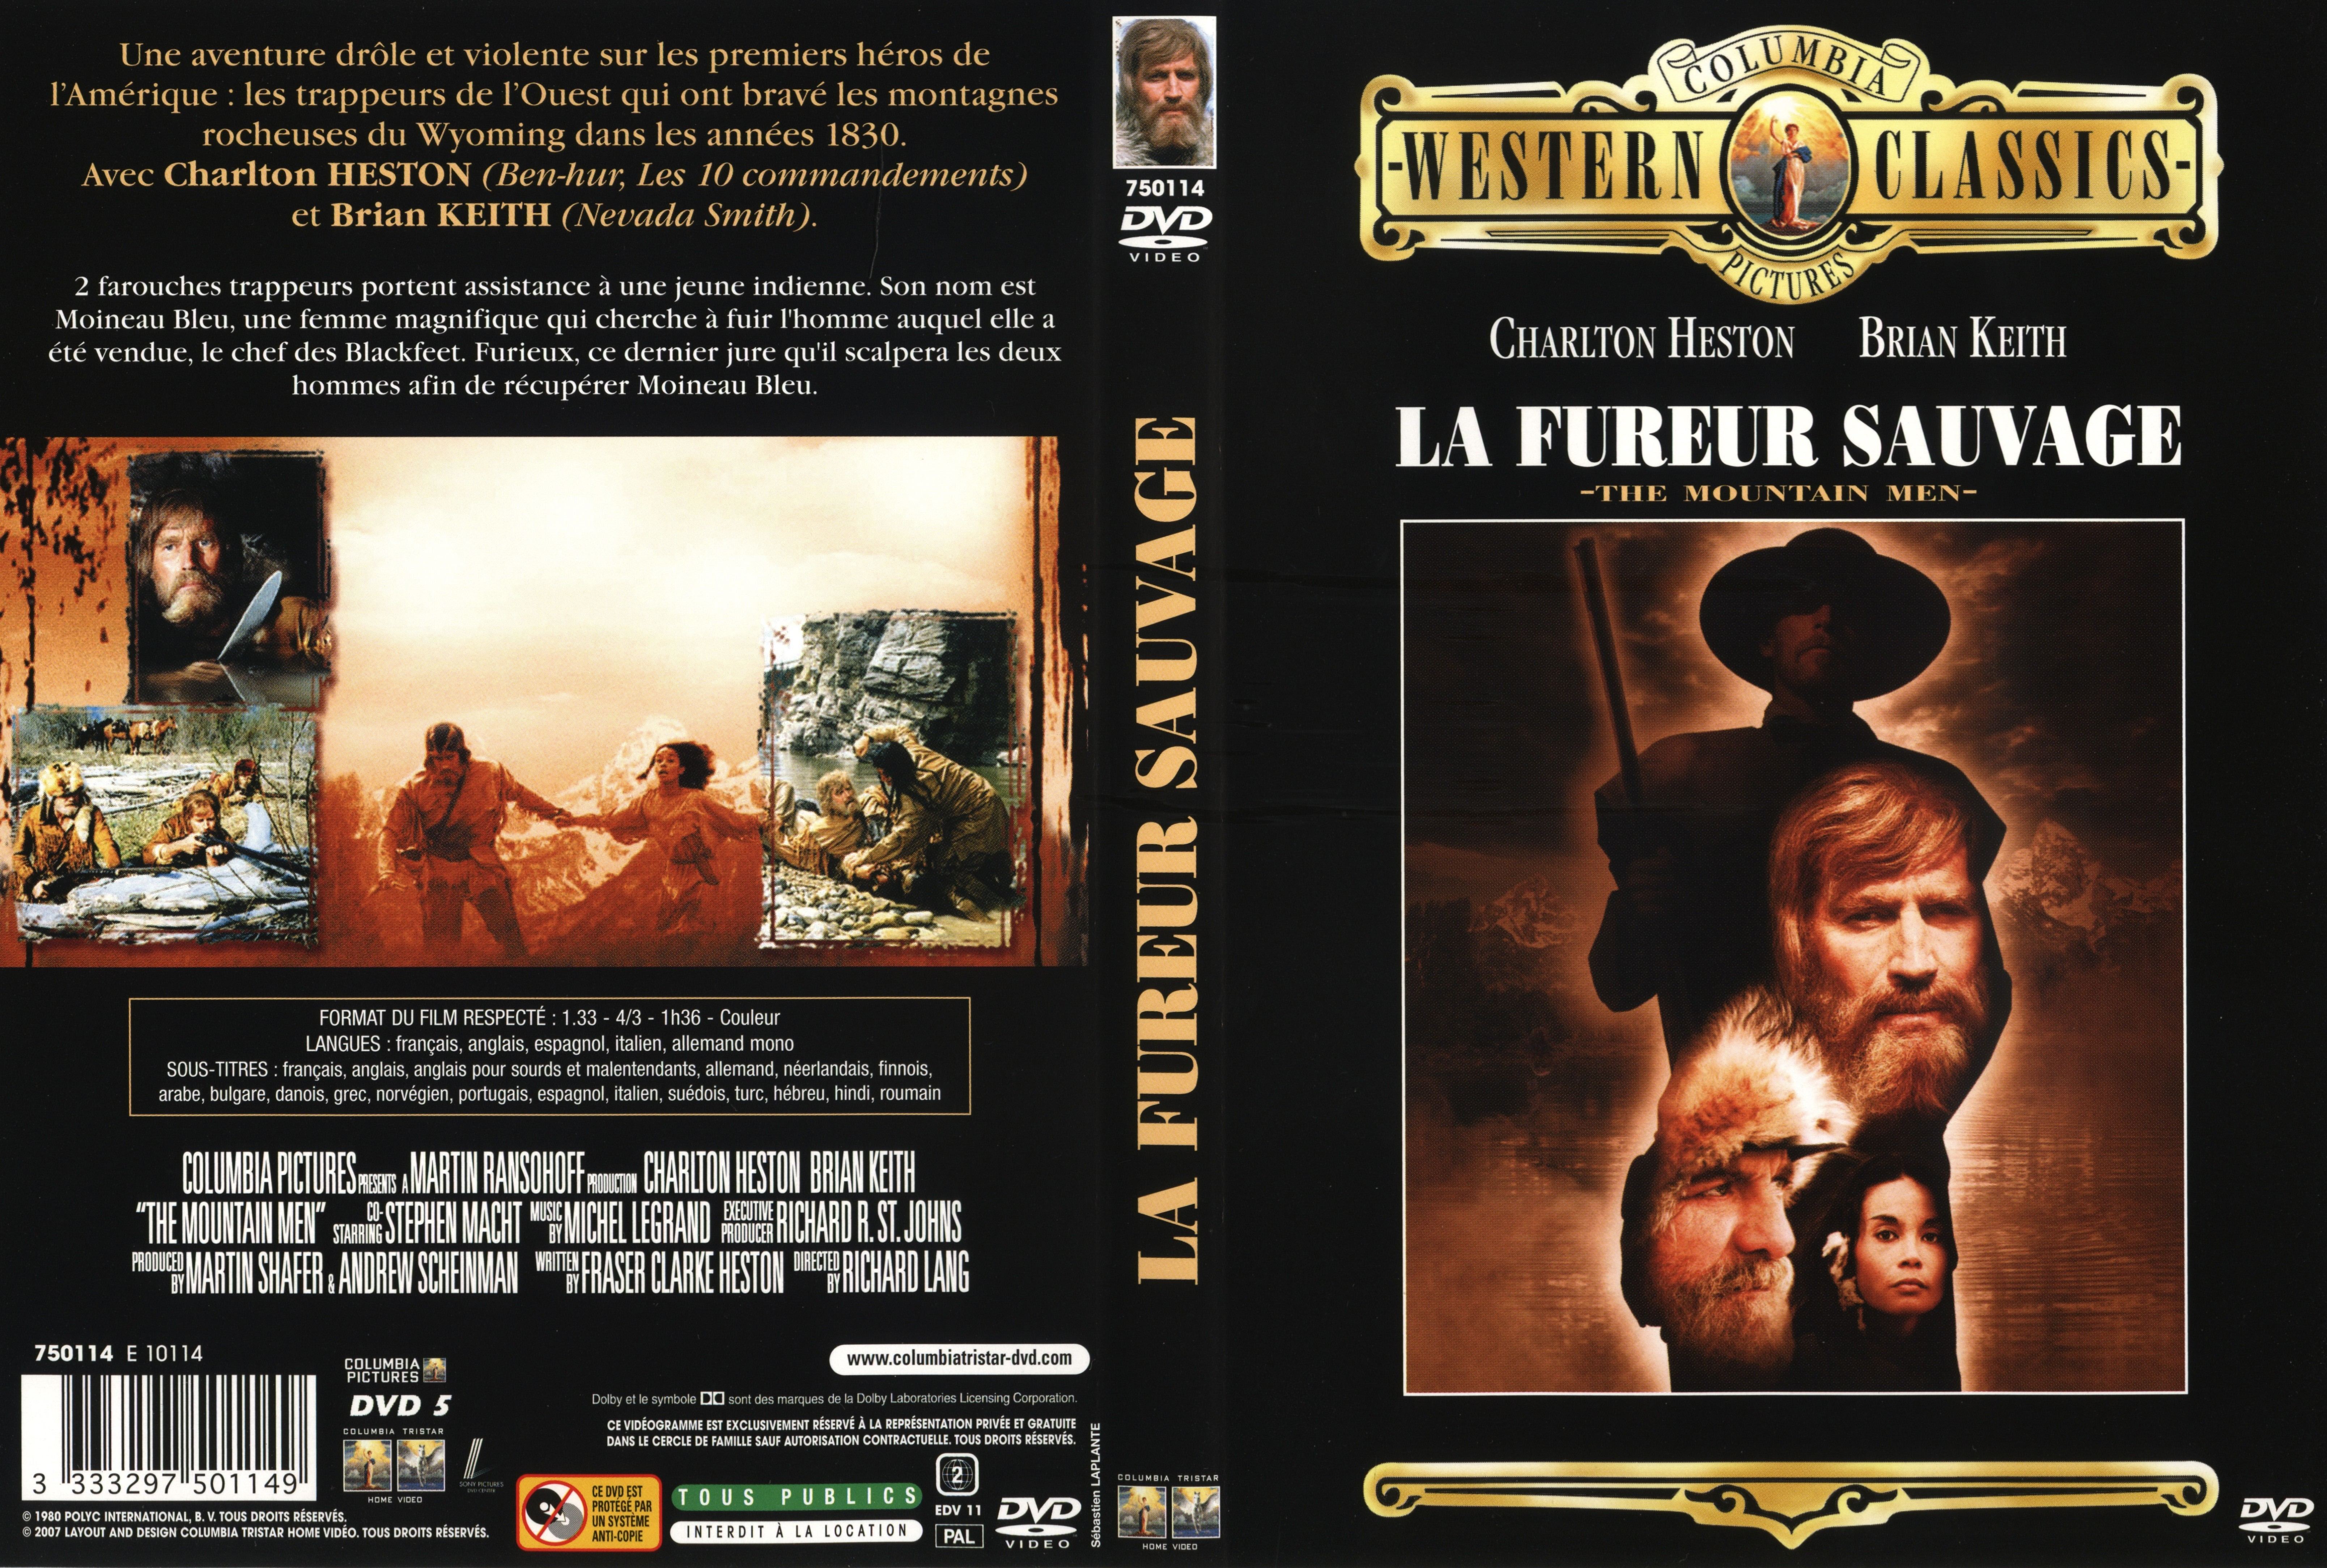 Jaquette DVD La fureur sauvage v2